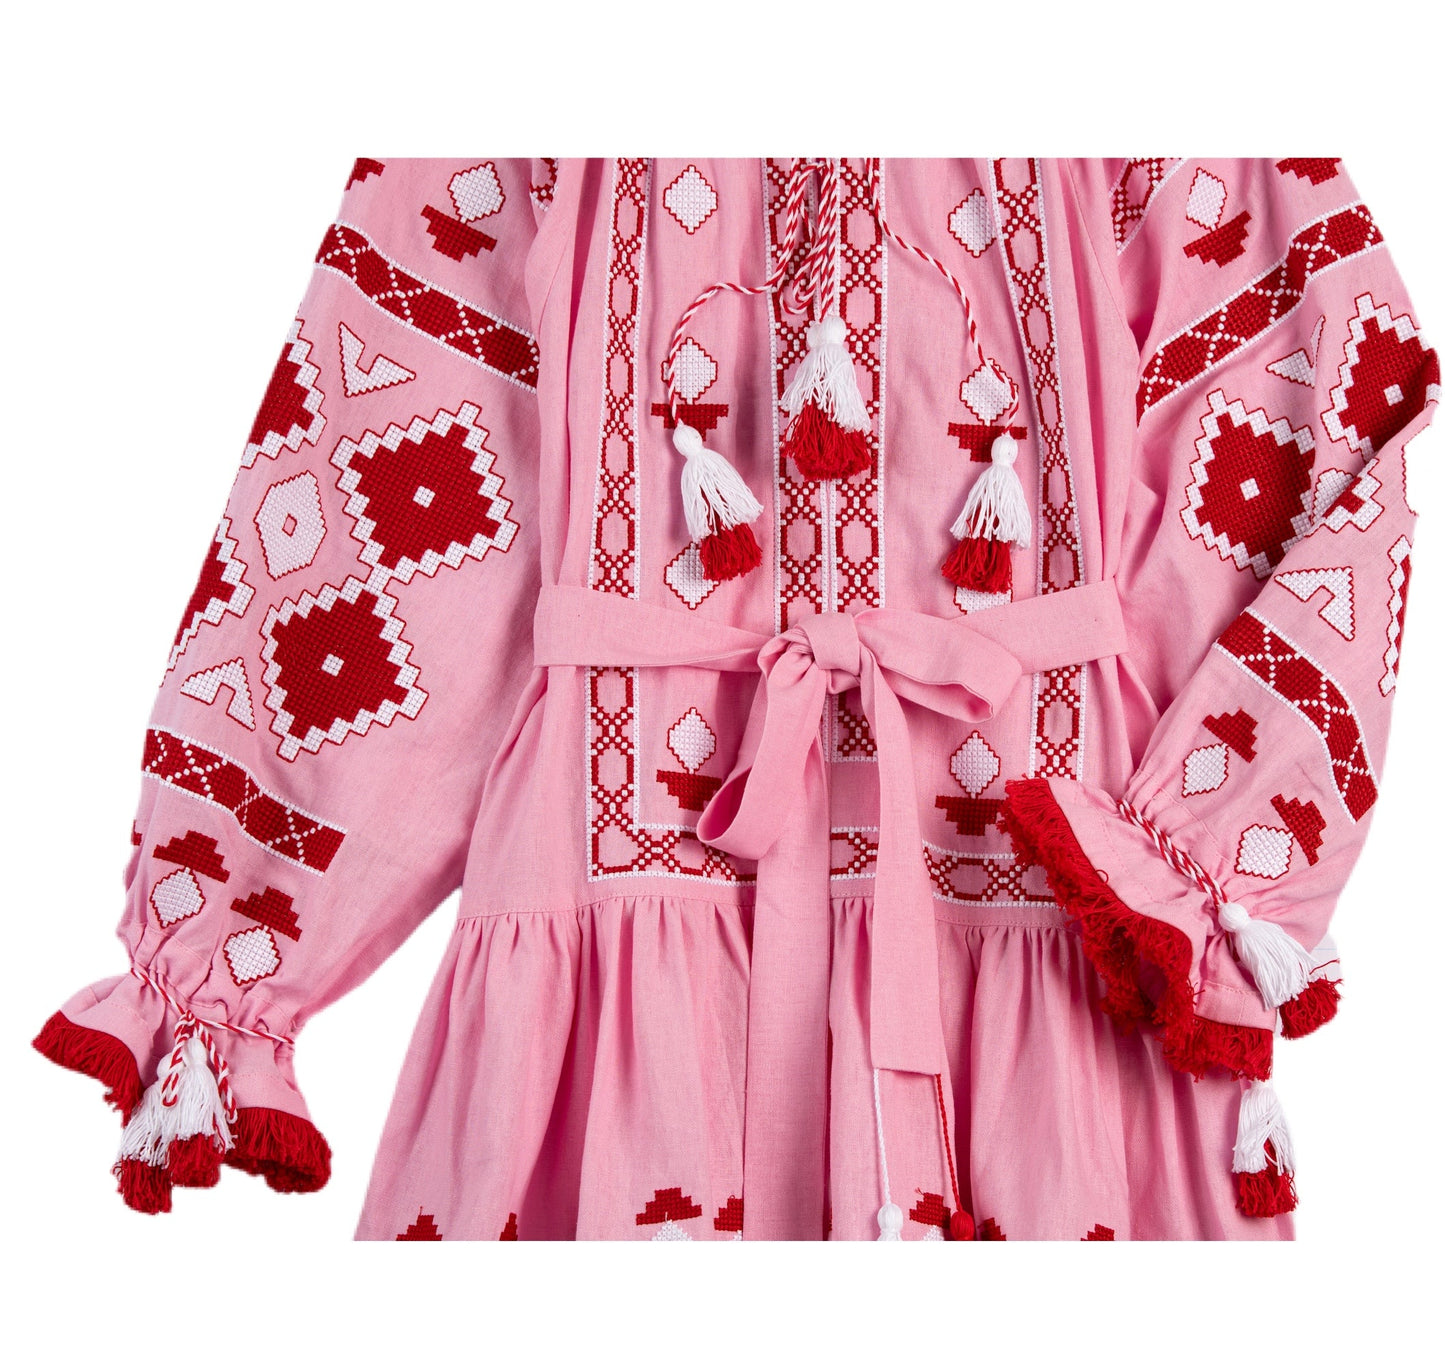 Nomeda Embroidered Ukrainian Dress - Pink, Red